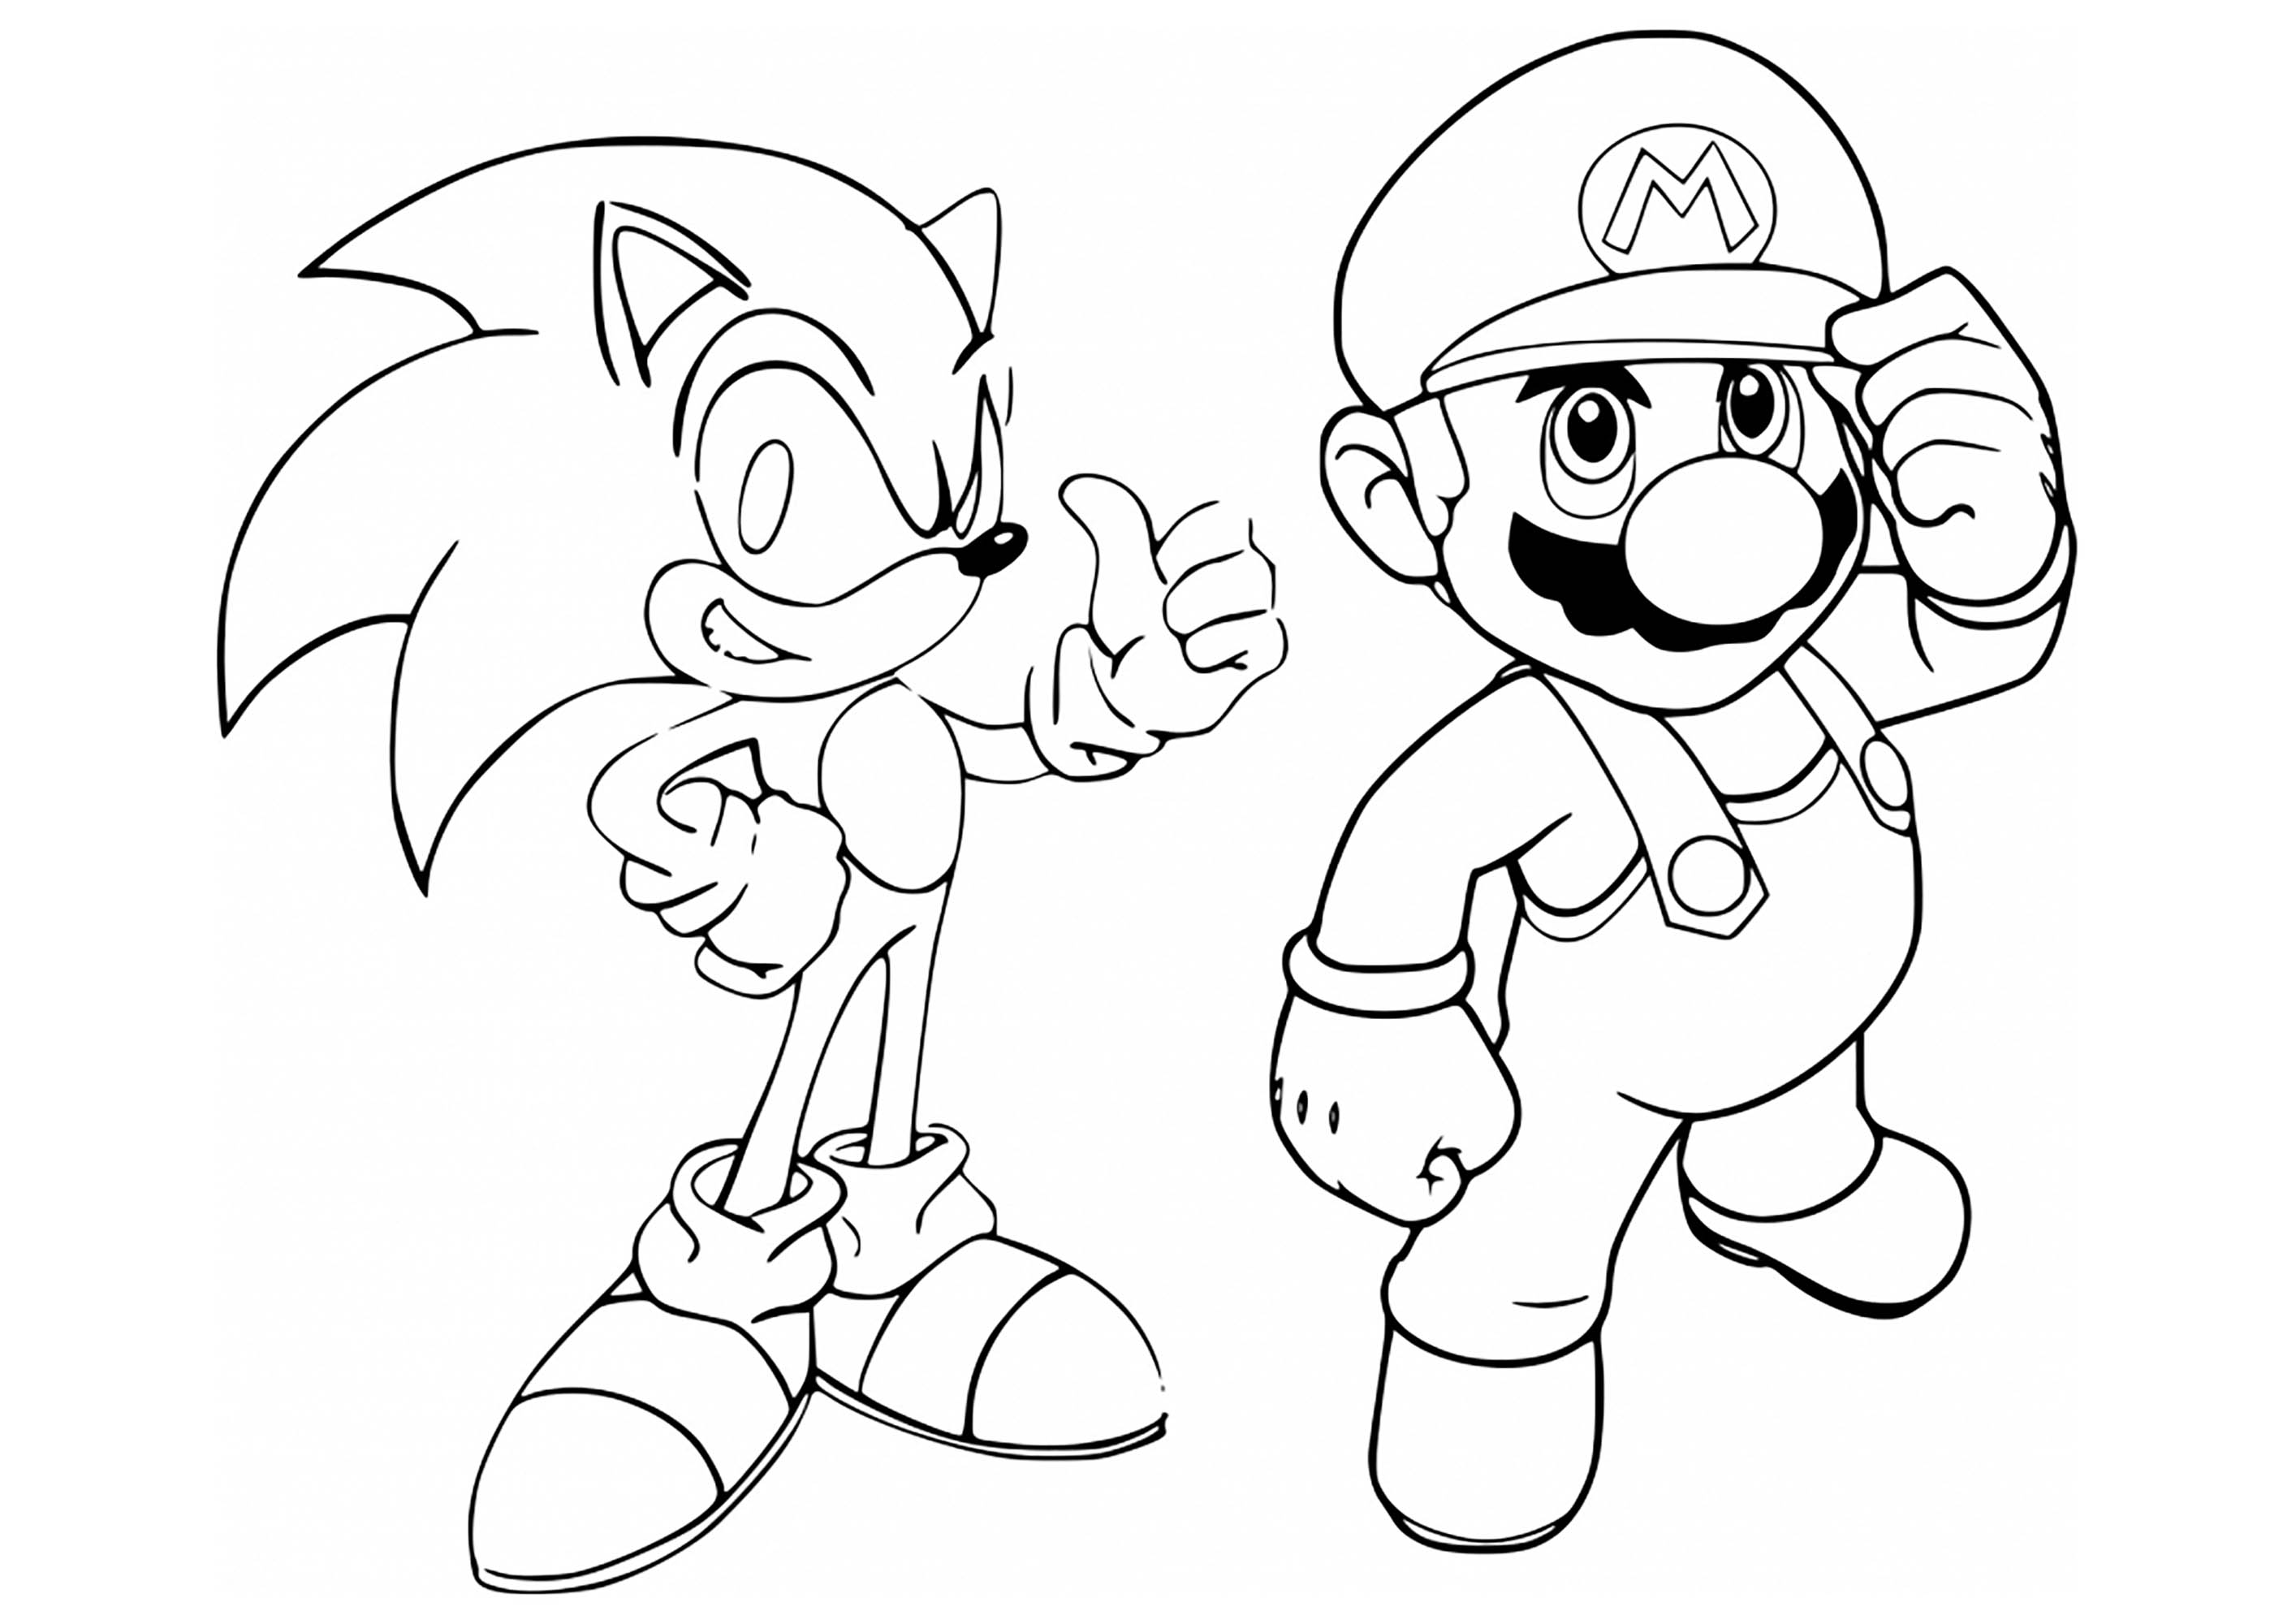 Desenhos para colorir de Sonic e Mario no console de jogos olímpico de Tóquio